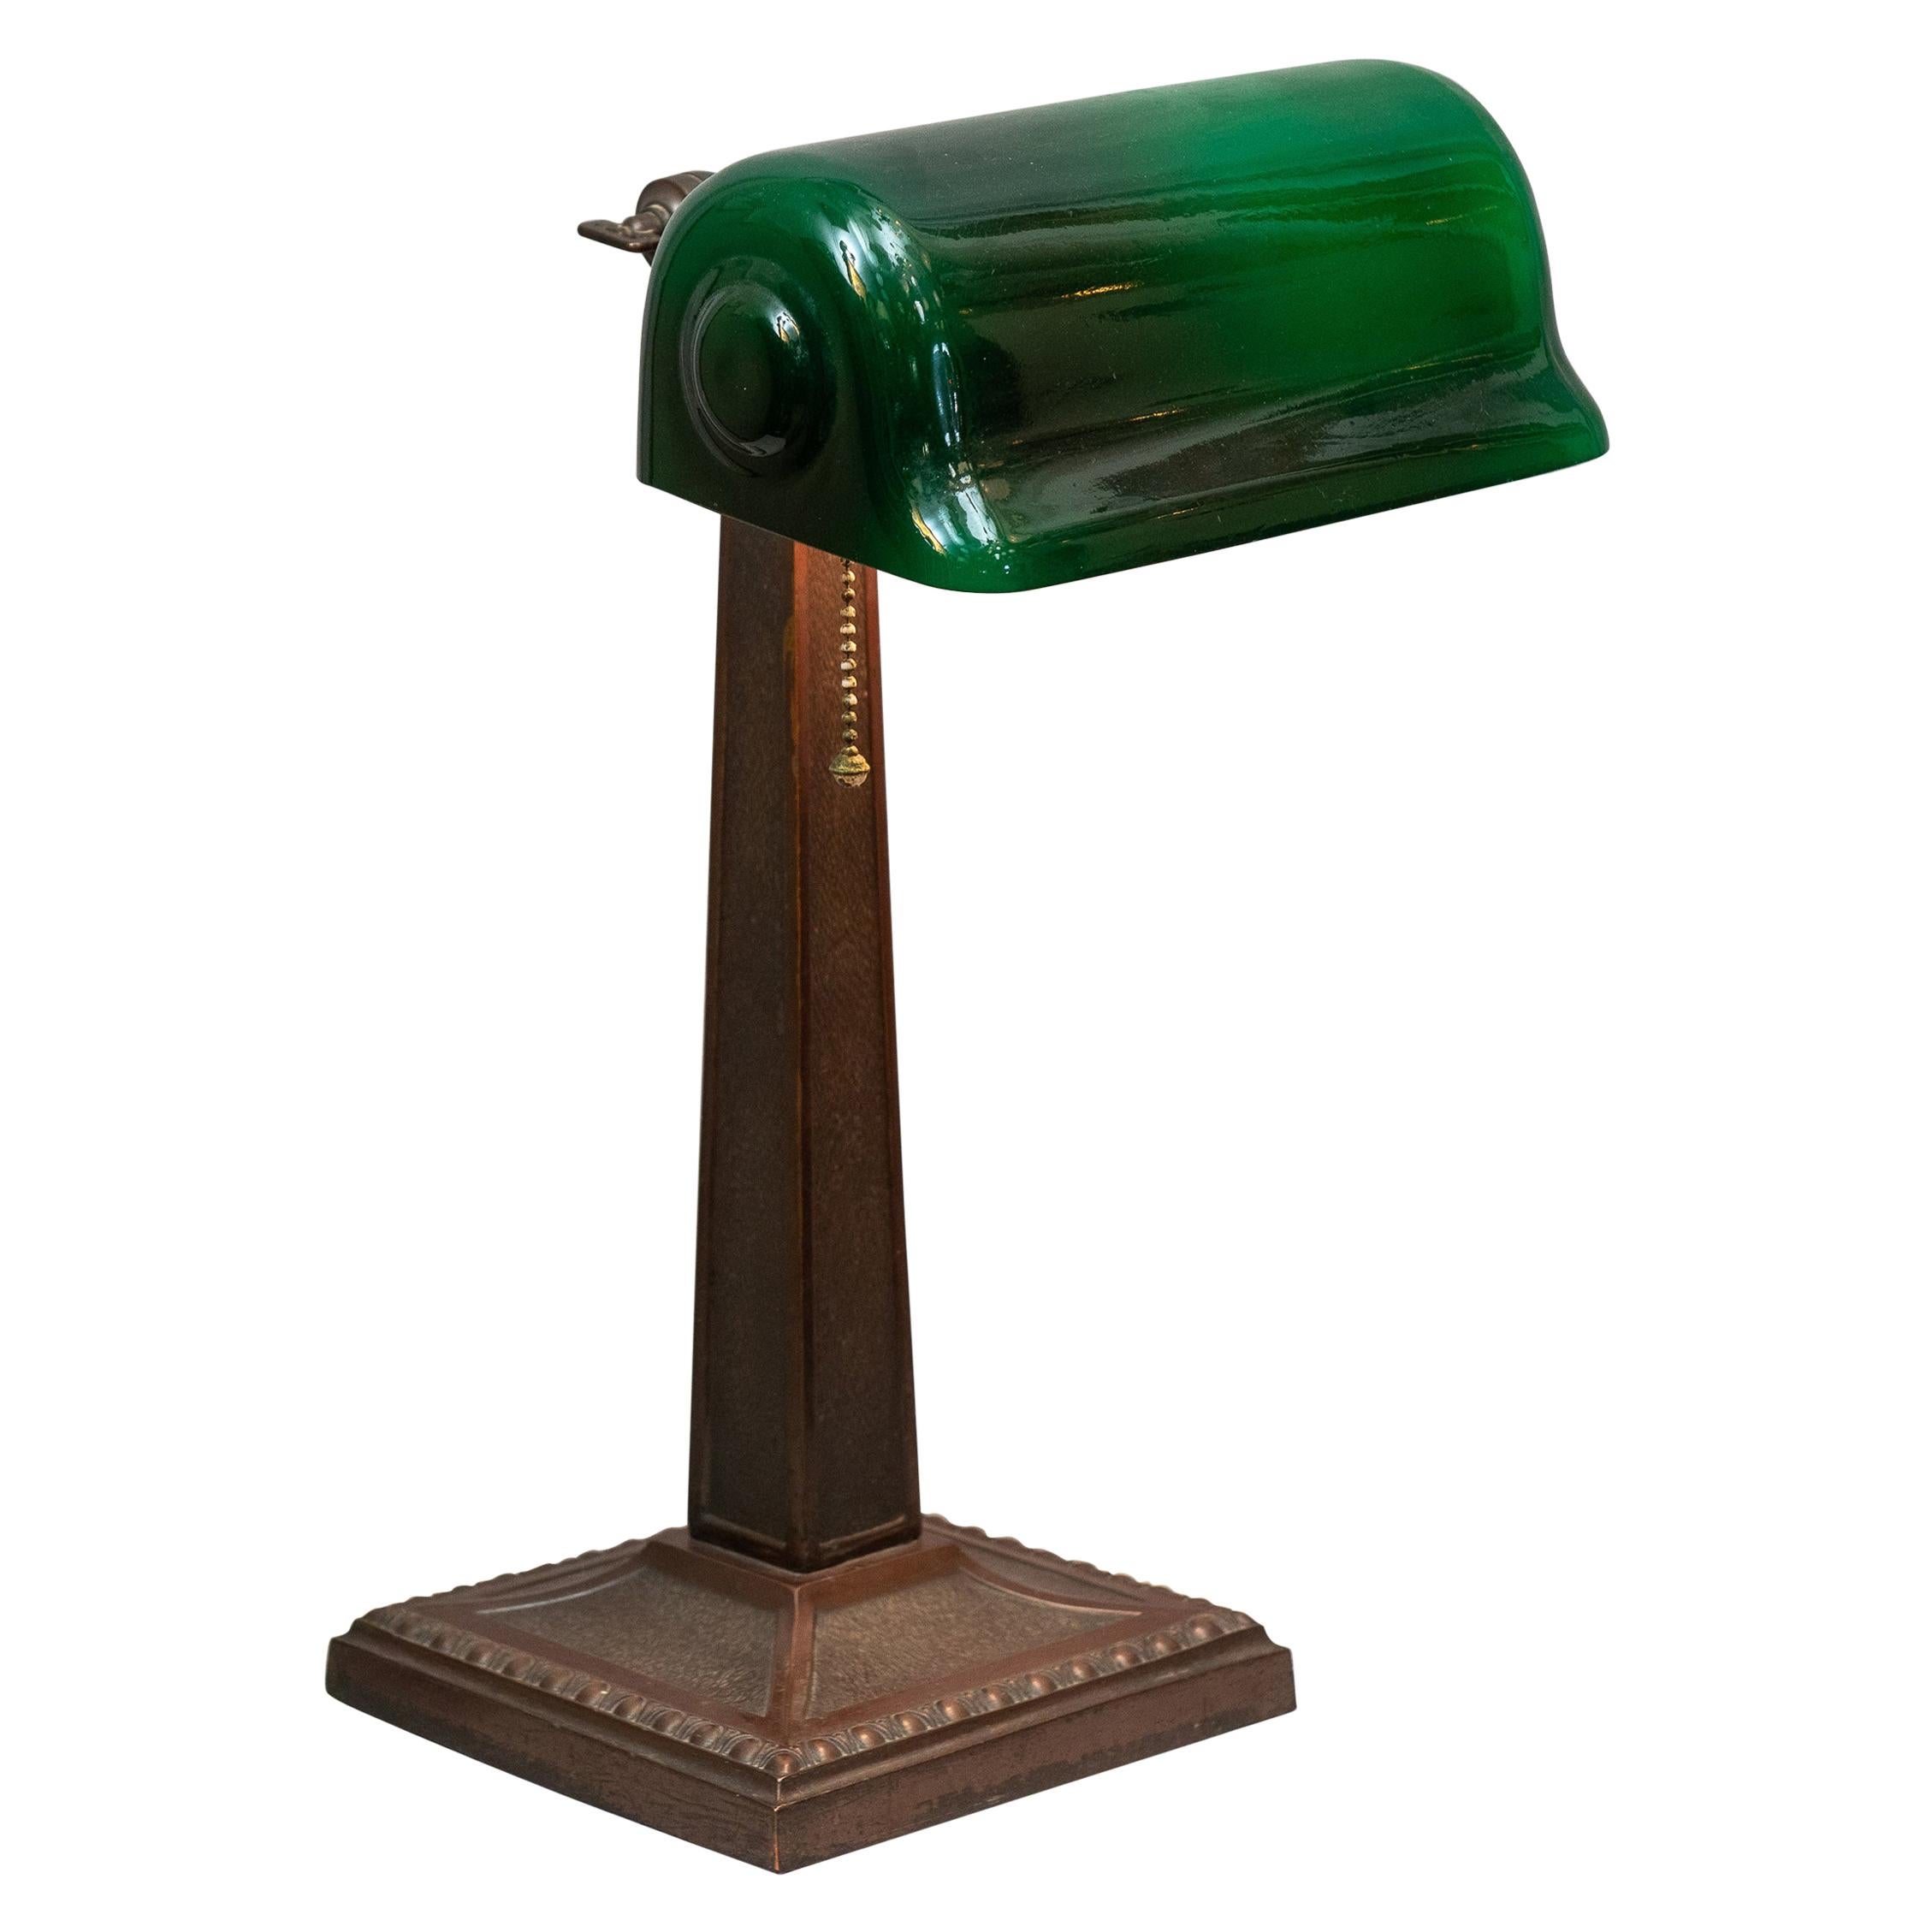 Green Shade Banker's Lamp Signed Verdelite